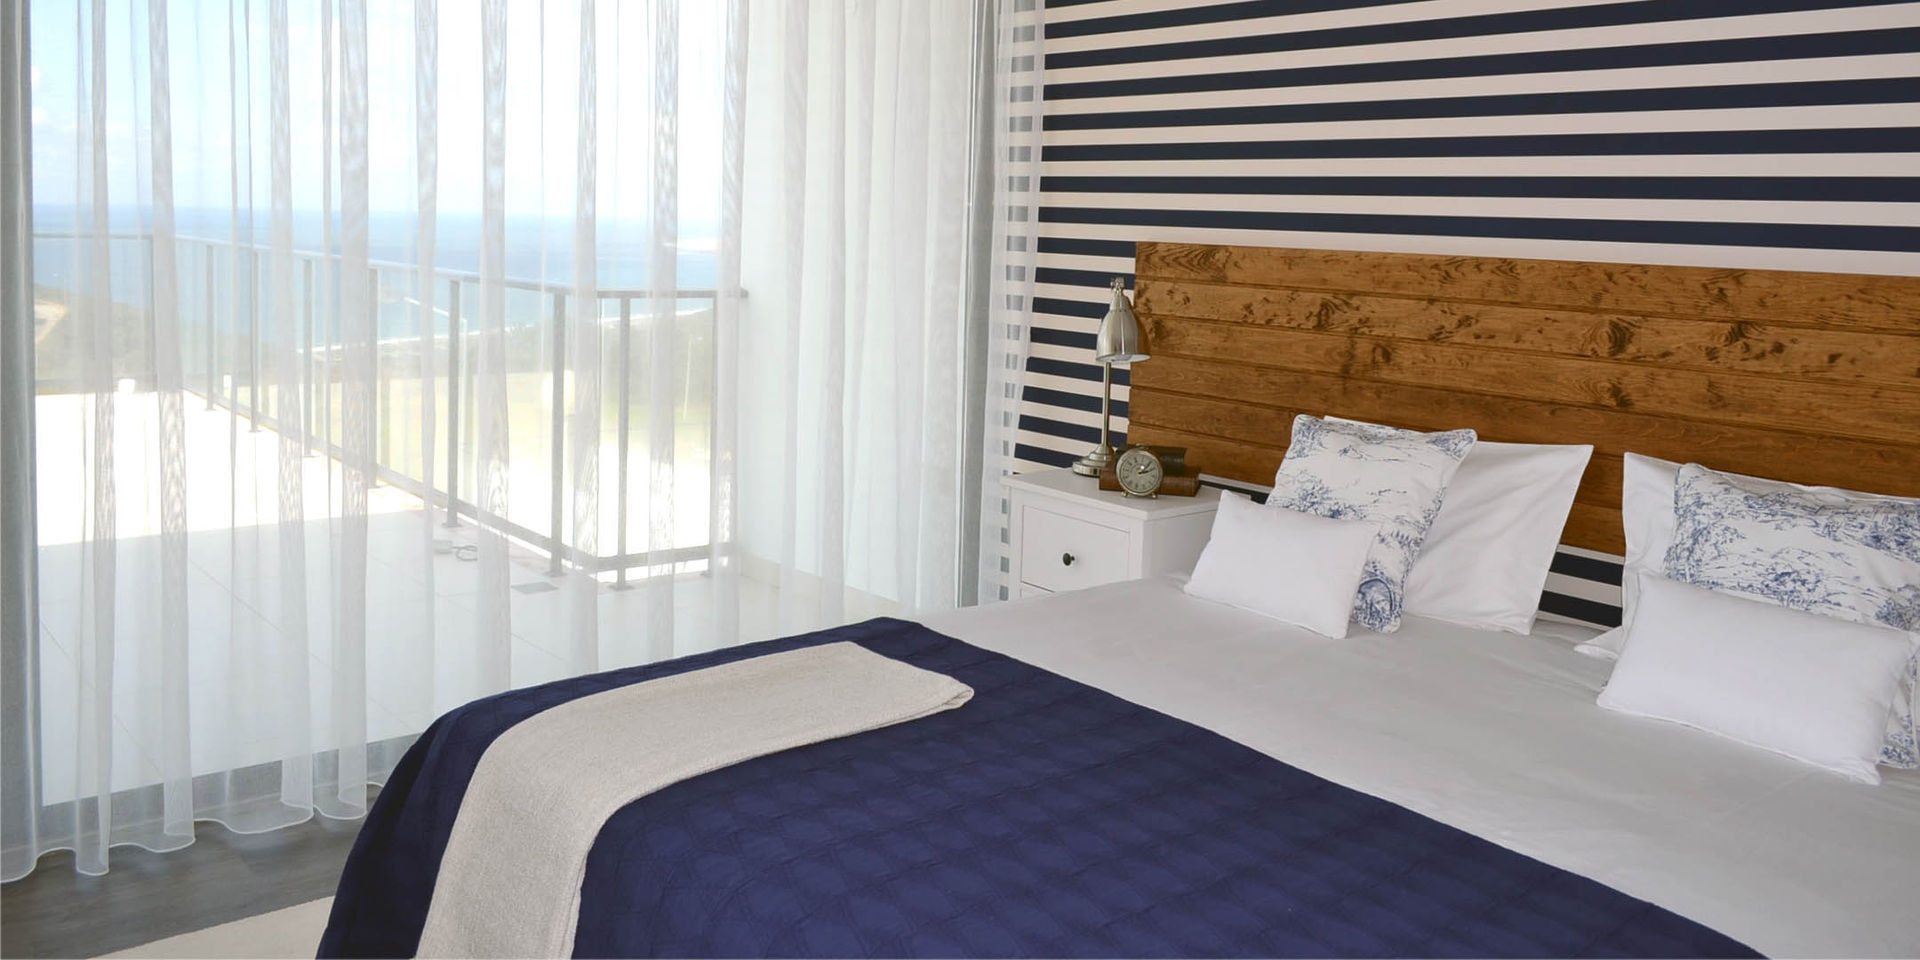 011 | Casa de Praia, Serra da Pescaria, Nazaré, T2 Arquitectura & Interiores T2 Arquitectura & Interiores Bedroom